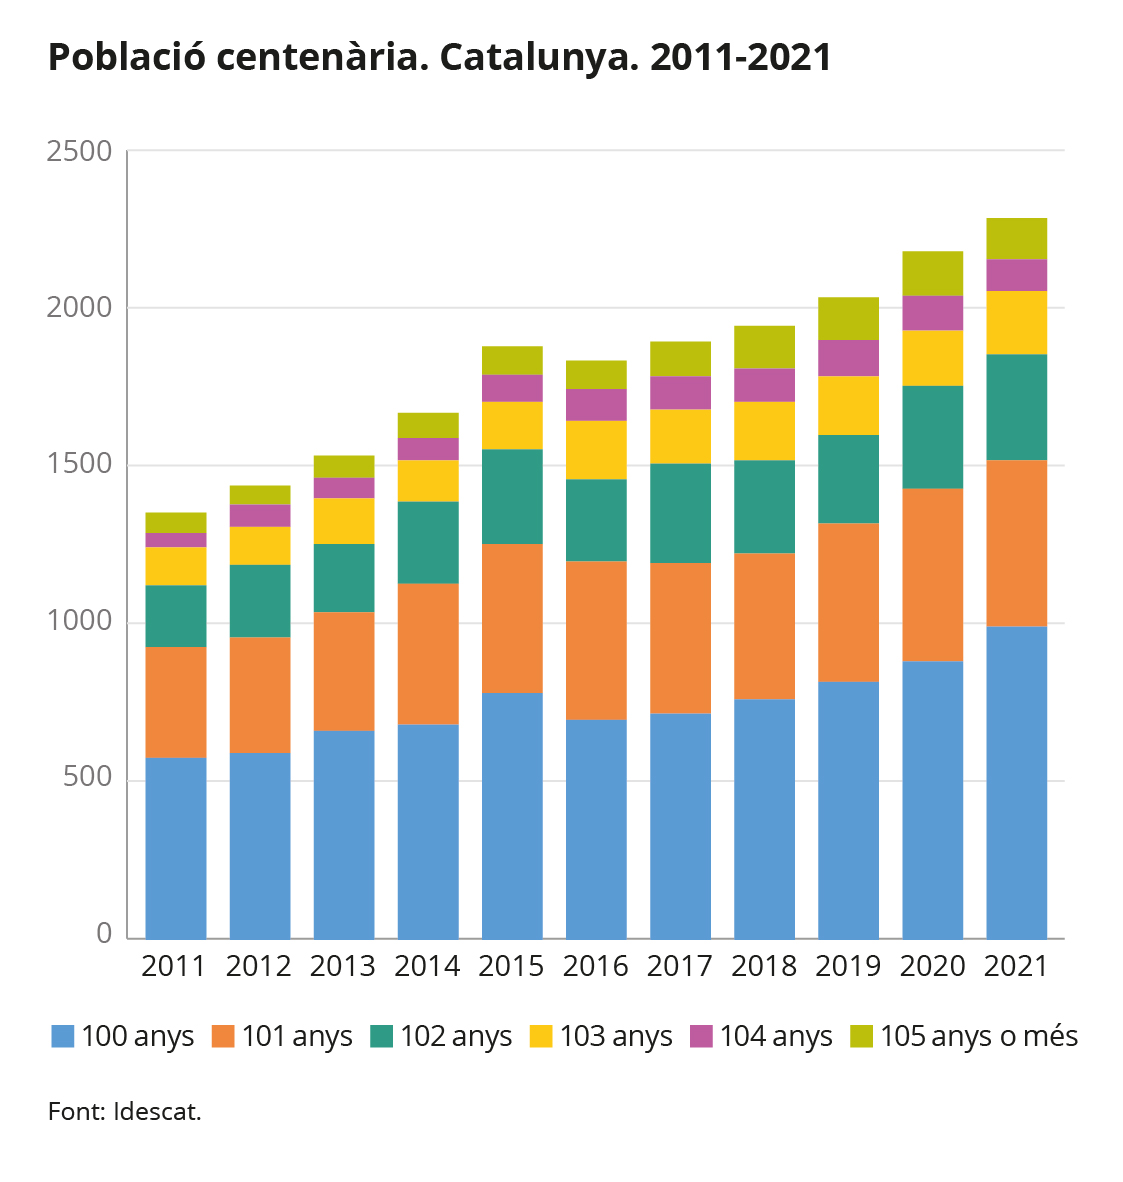 Gràfic 1. Població centenària. Catalunya. 2011-2021